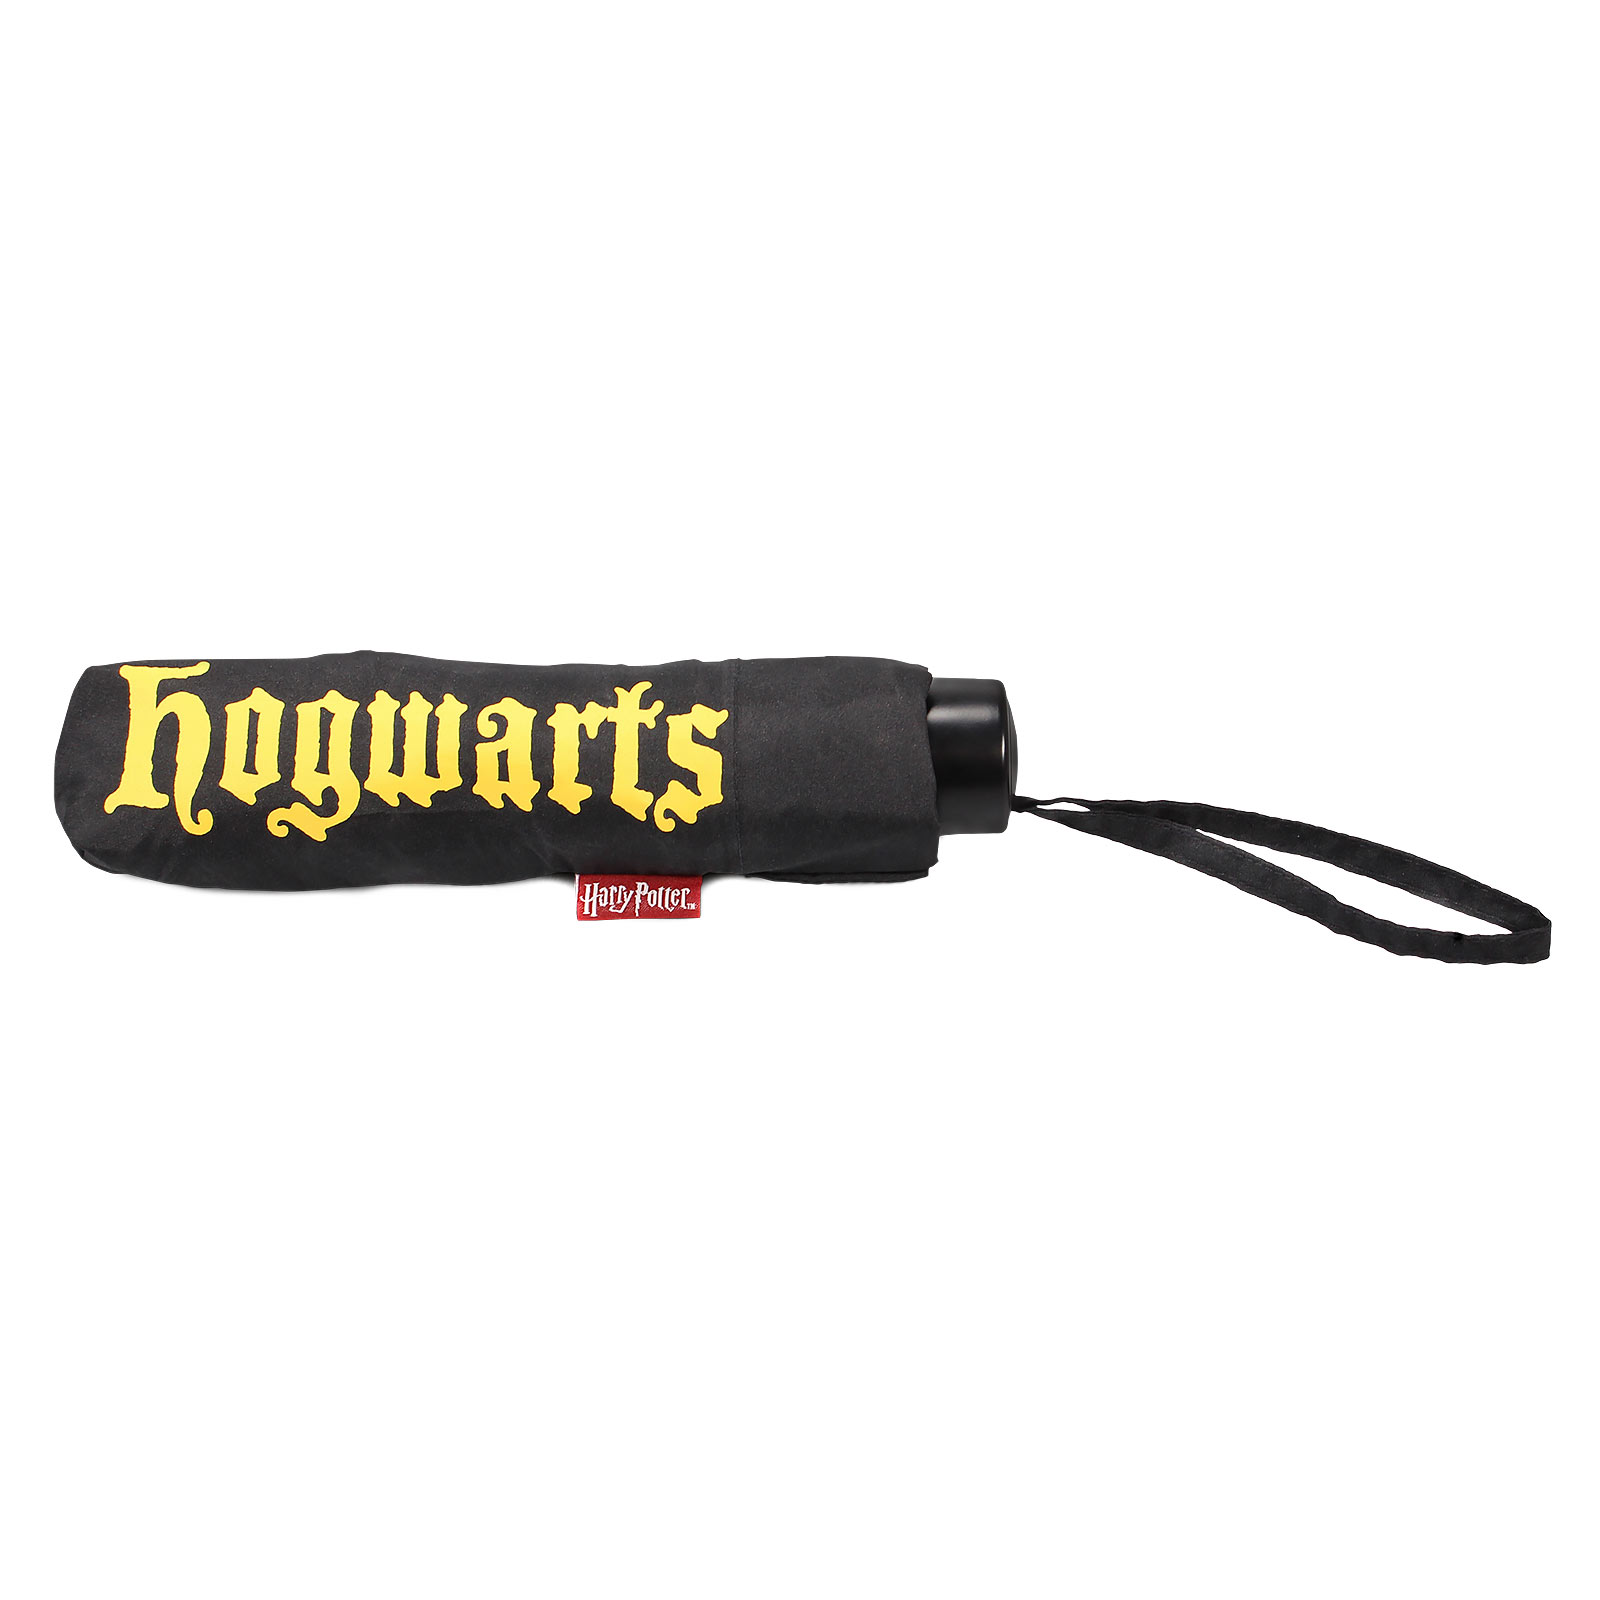 Harry Potter - Hogwarts Crest Umbrella with Aqua Effect